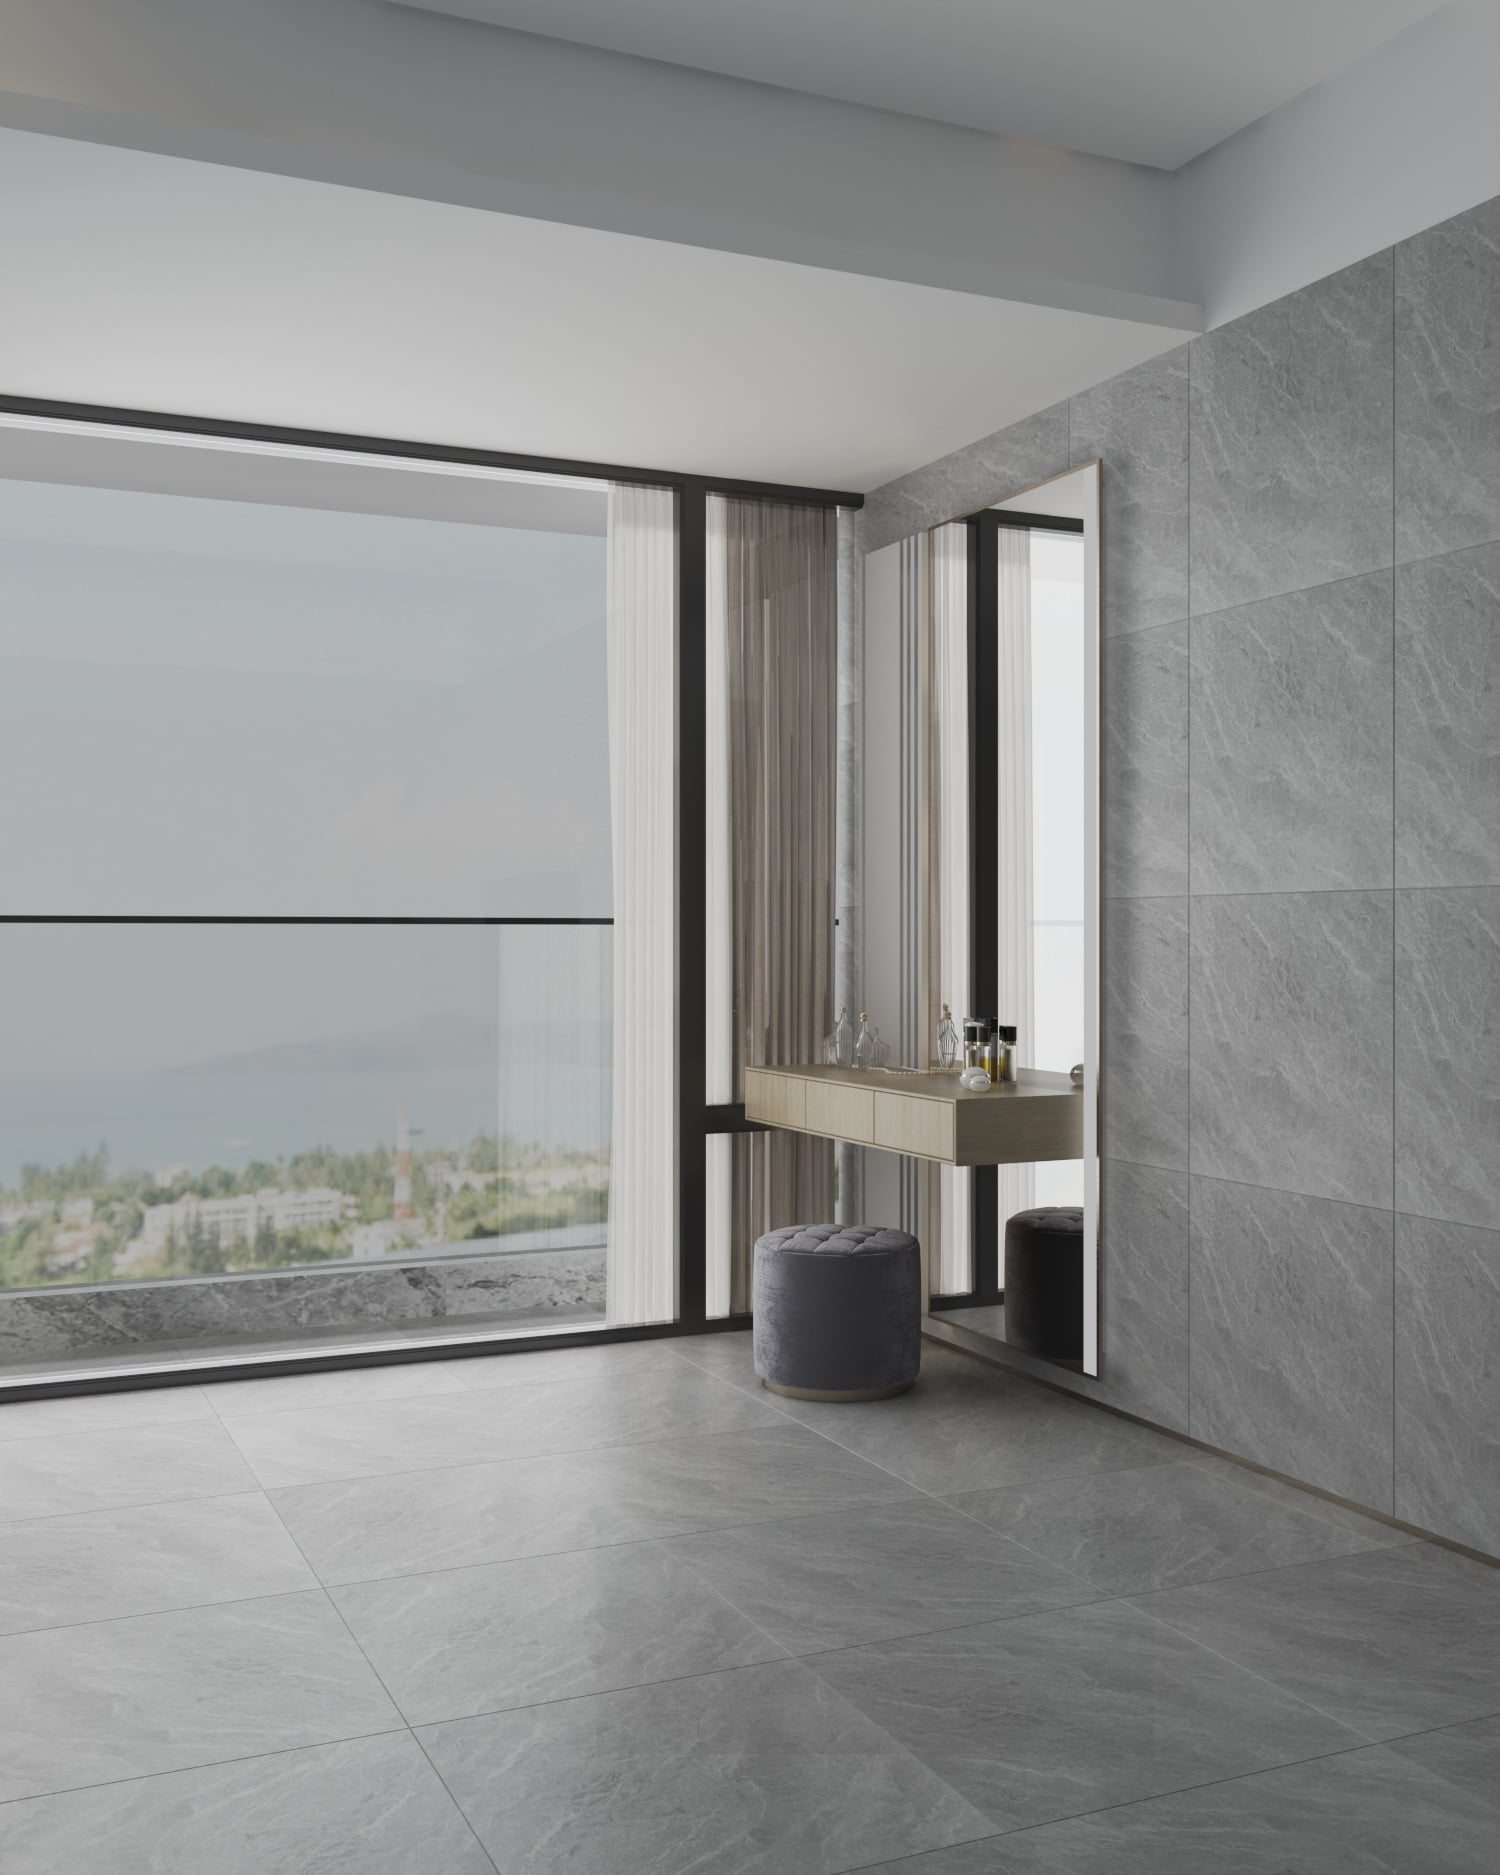 Gạch 60x60 mờ, vân đá màu xám trong nhà tắm rộng tạo không gian cao cấp và sang trọng.